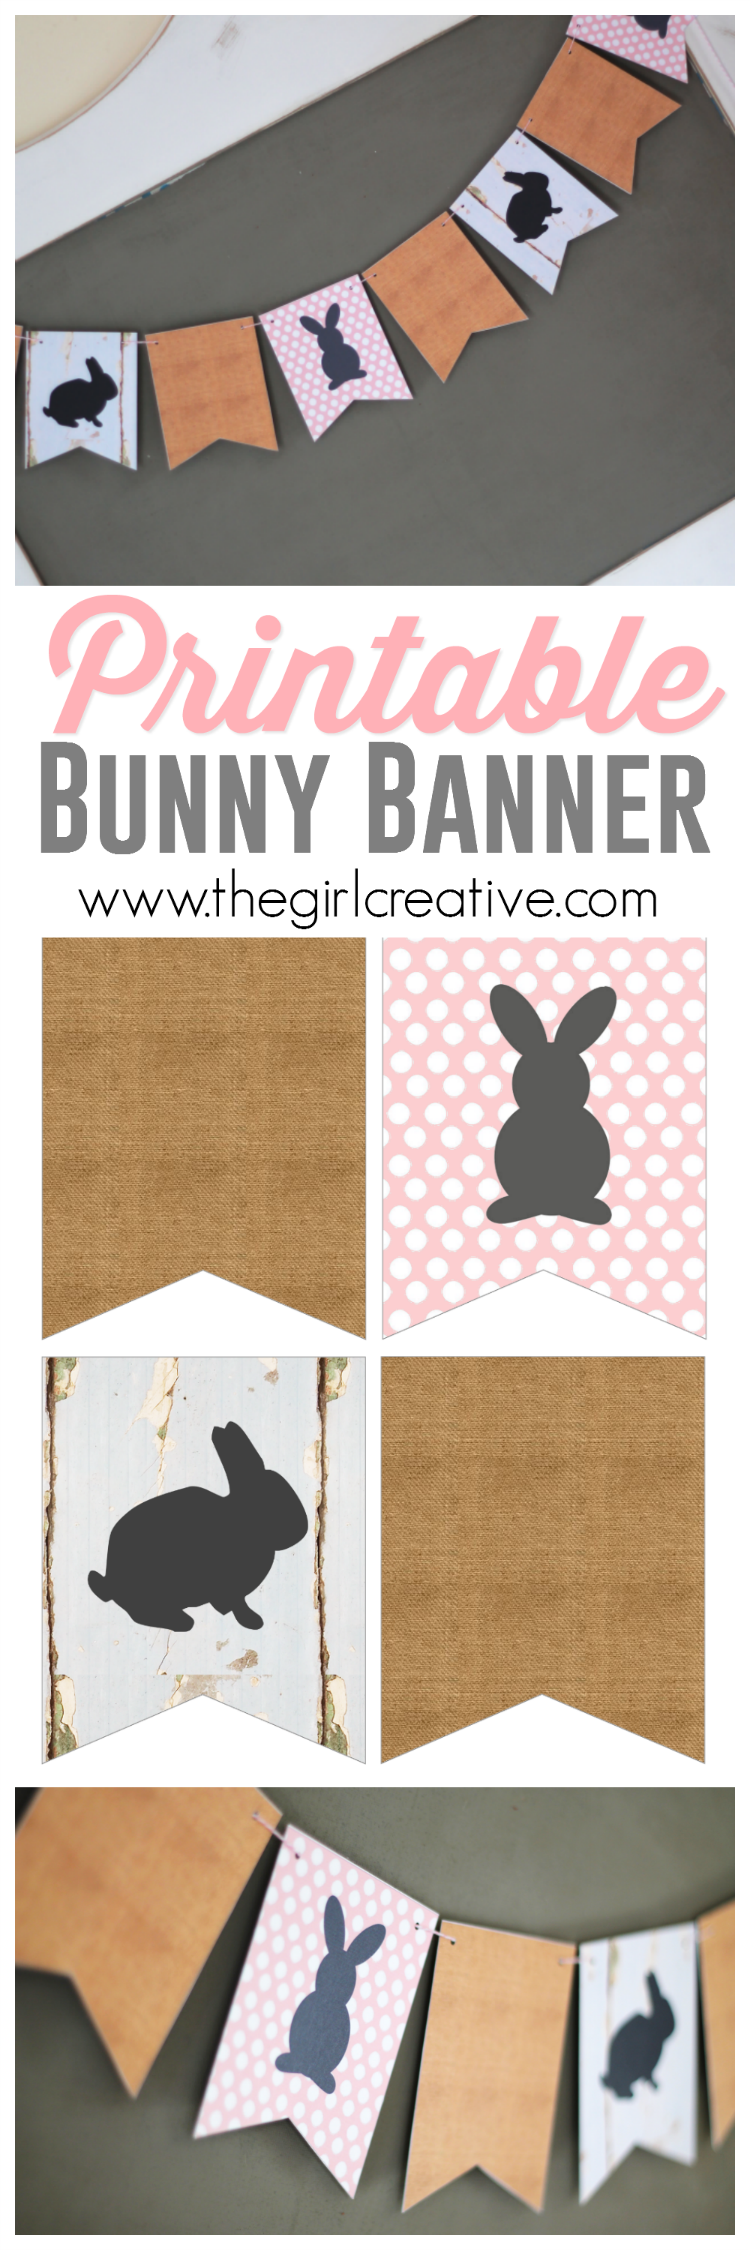 printable-bunny-banner-the-girl-creative